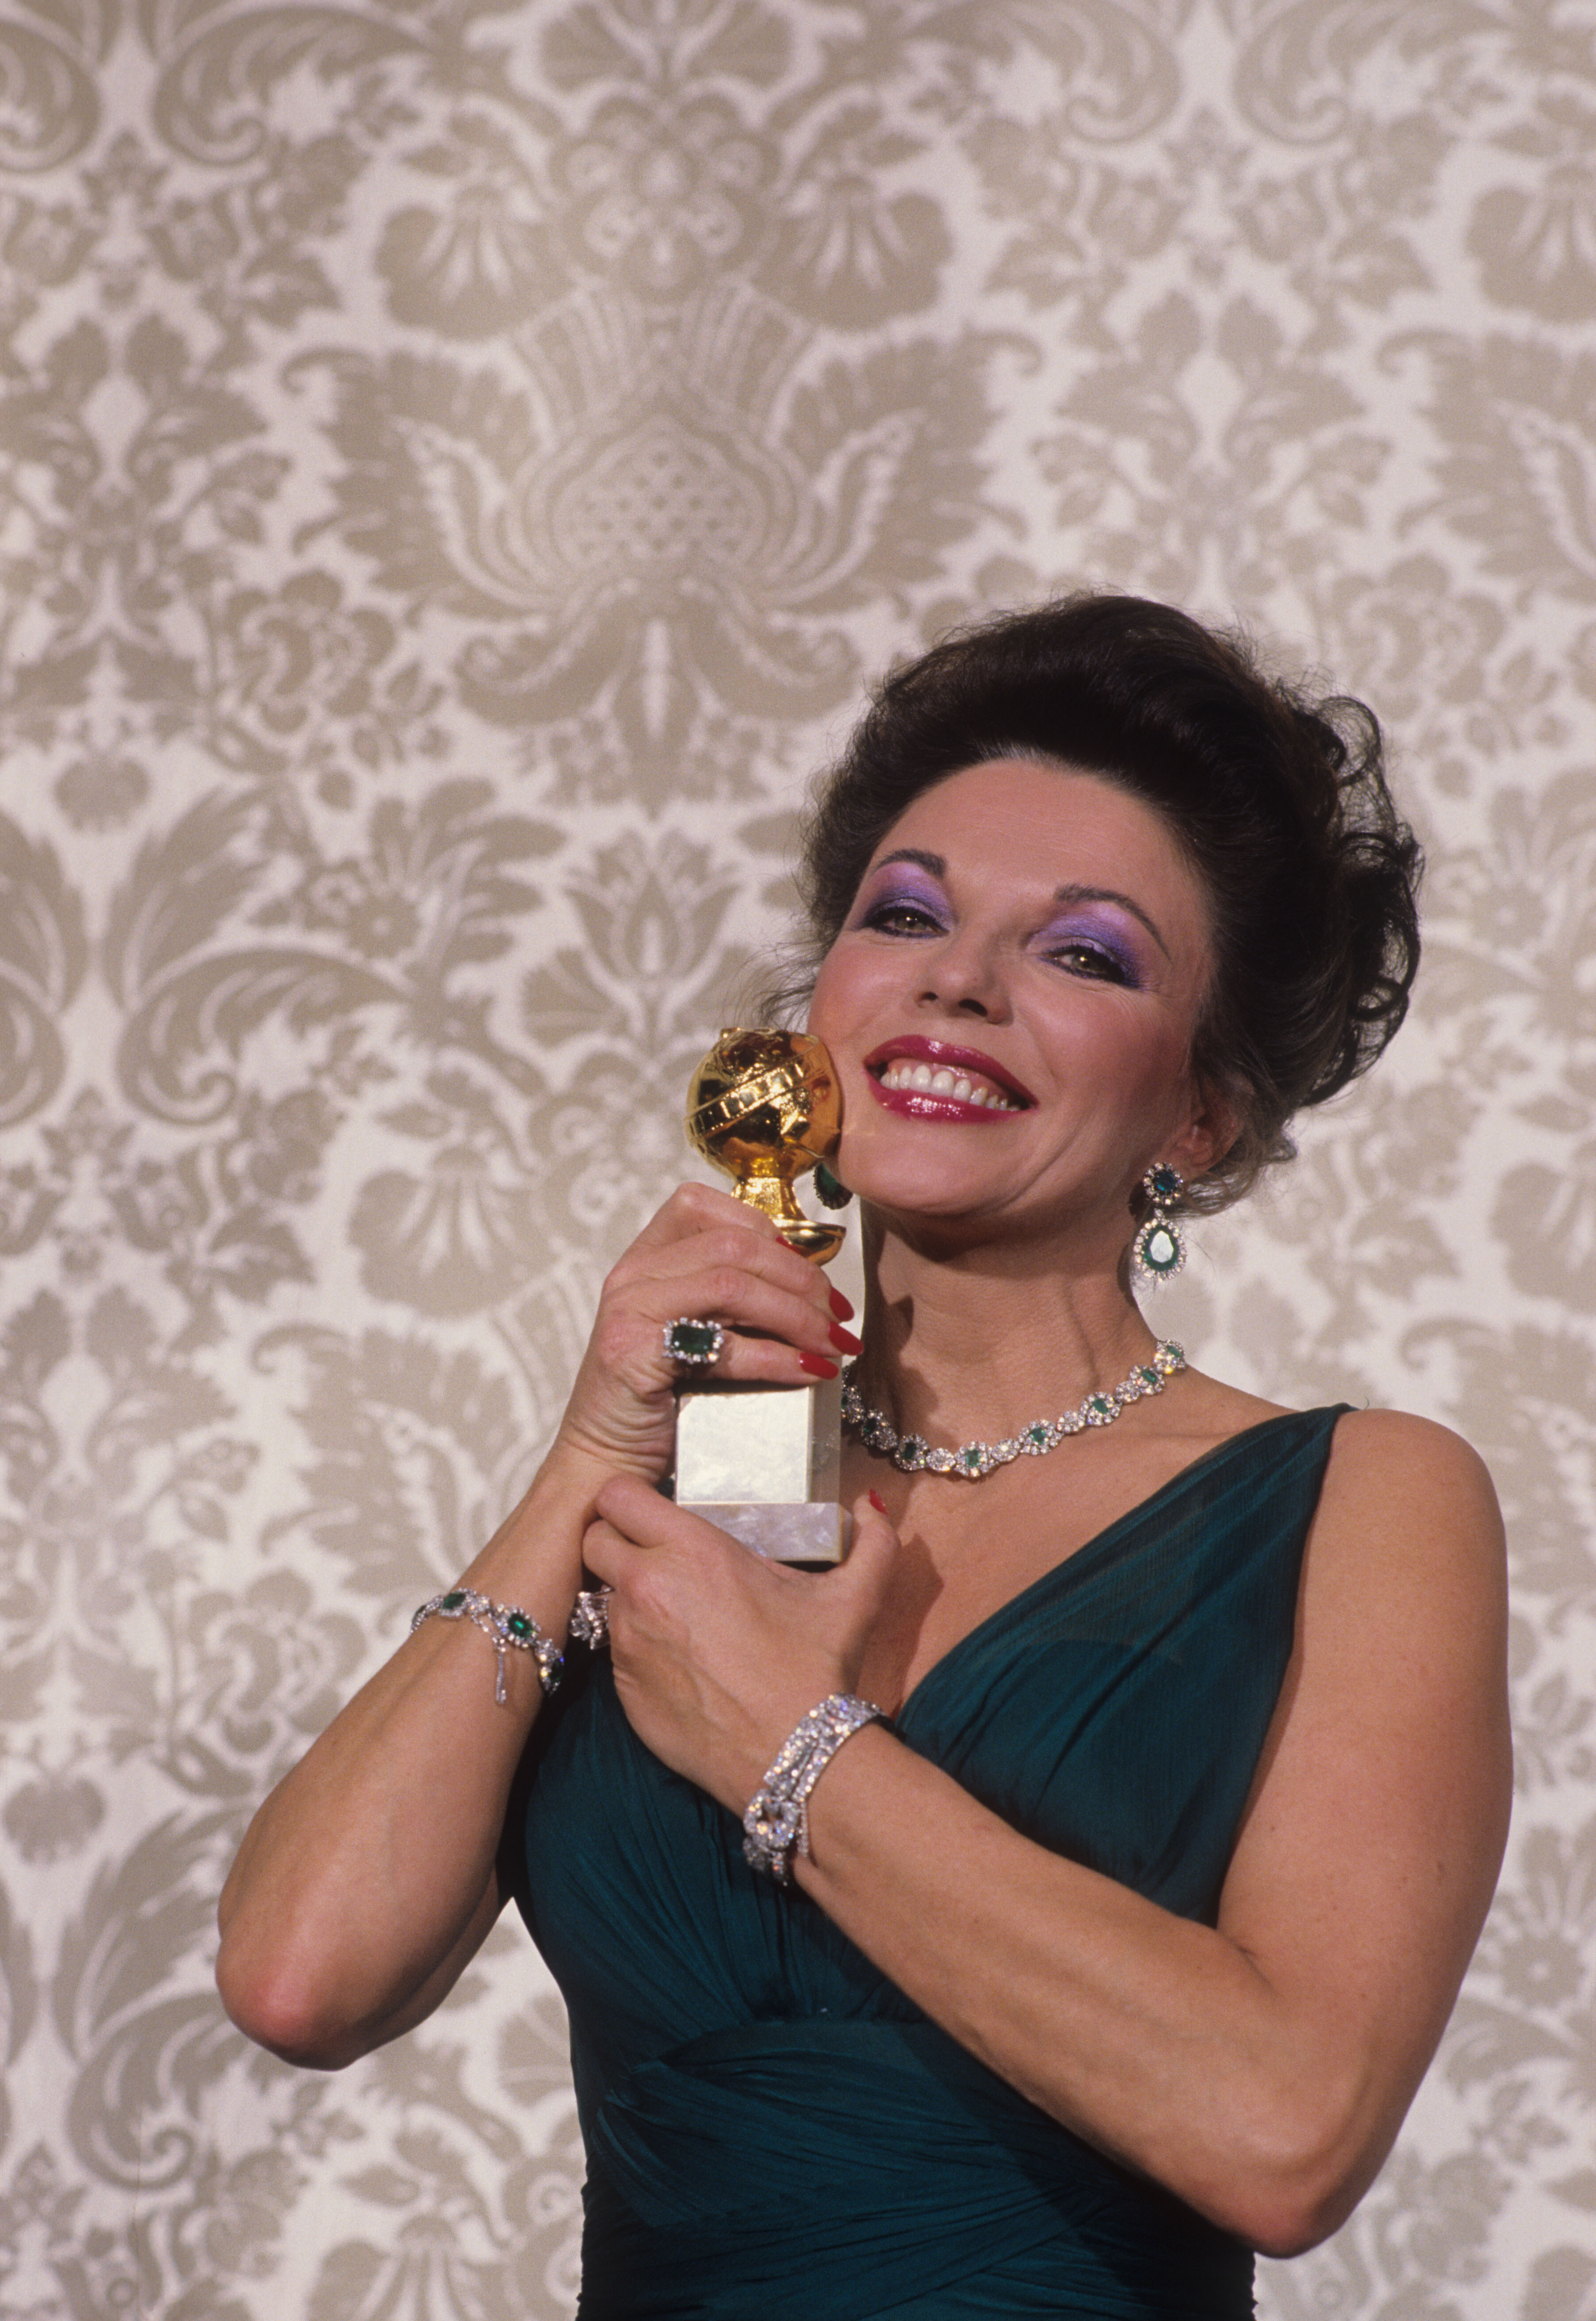 1983 JoanCollins (Actress TV Drama Dinasty)